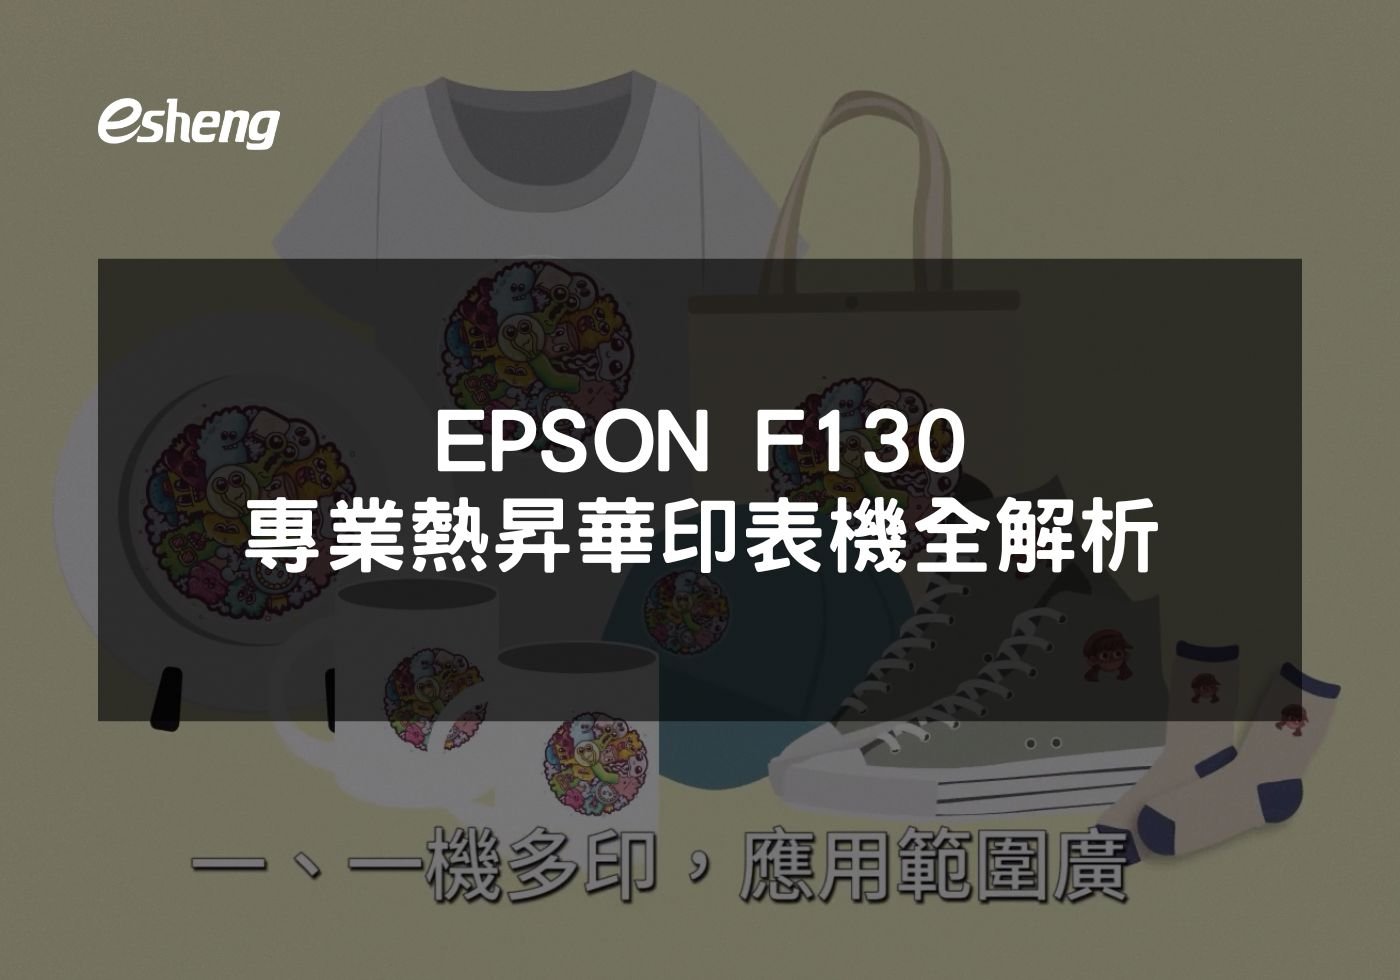 閱讀更多文章 EPSON F130專業熱昇華印表機全解析